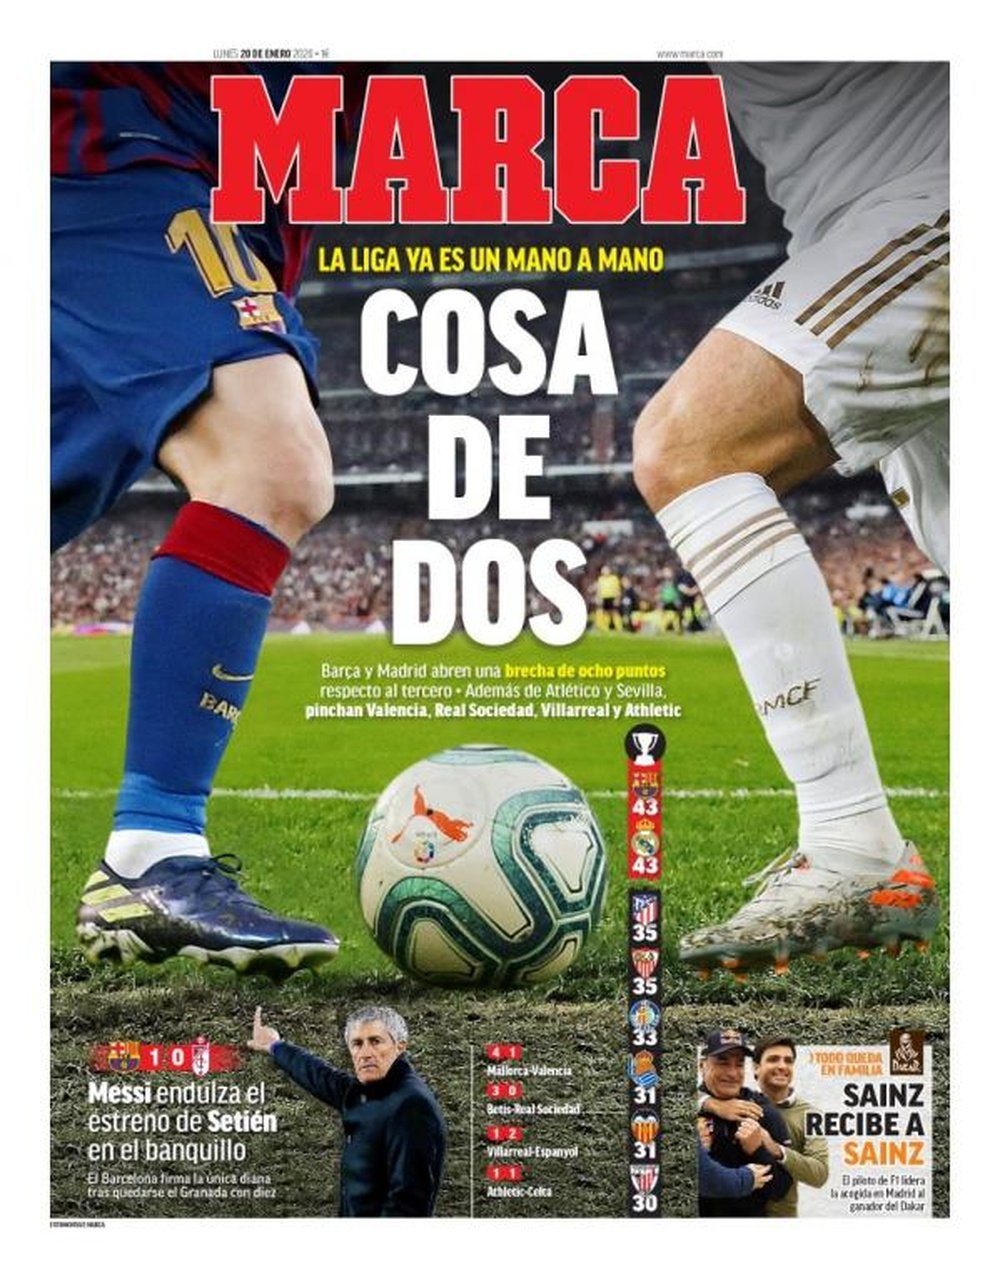 Les Unes des journaux sportifs en Espagne du 20 janvier 2020. Marca